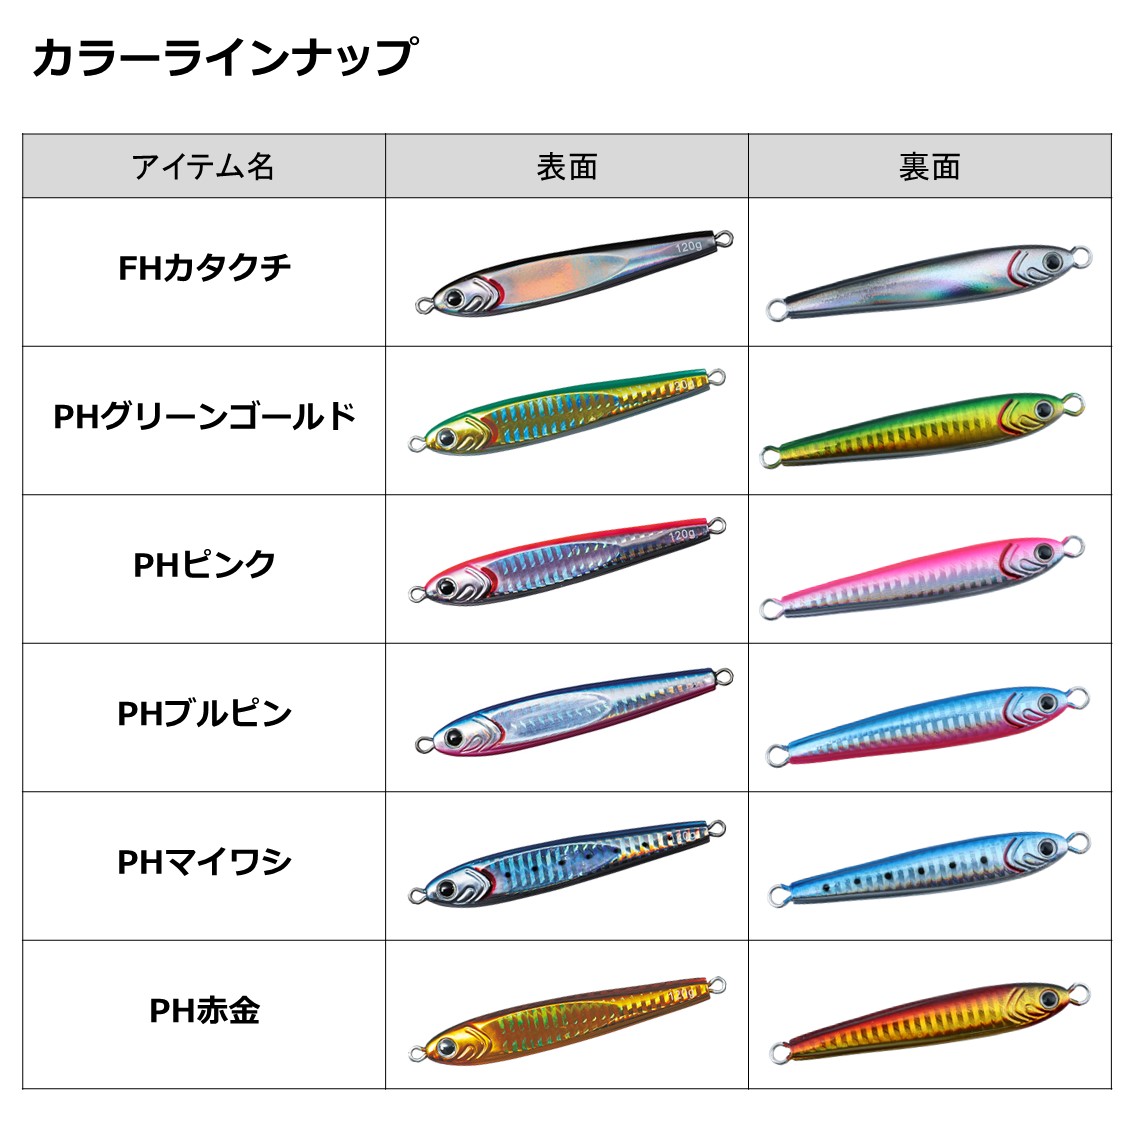 【全3色】 ダイワ ソルティガTGベイト 80g 追加カラー (メタルジグ ジギング) - 釣り具の販売、通販なら、フィッシング遊-WEB本店